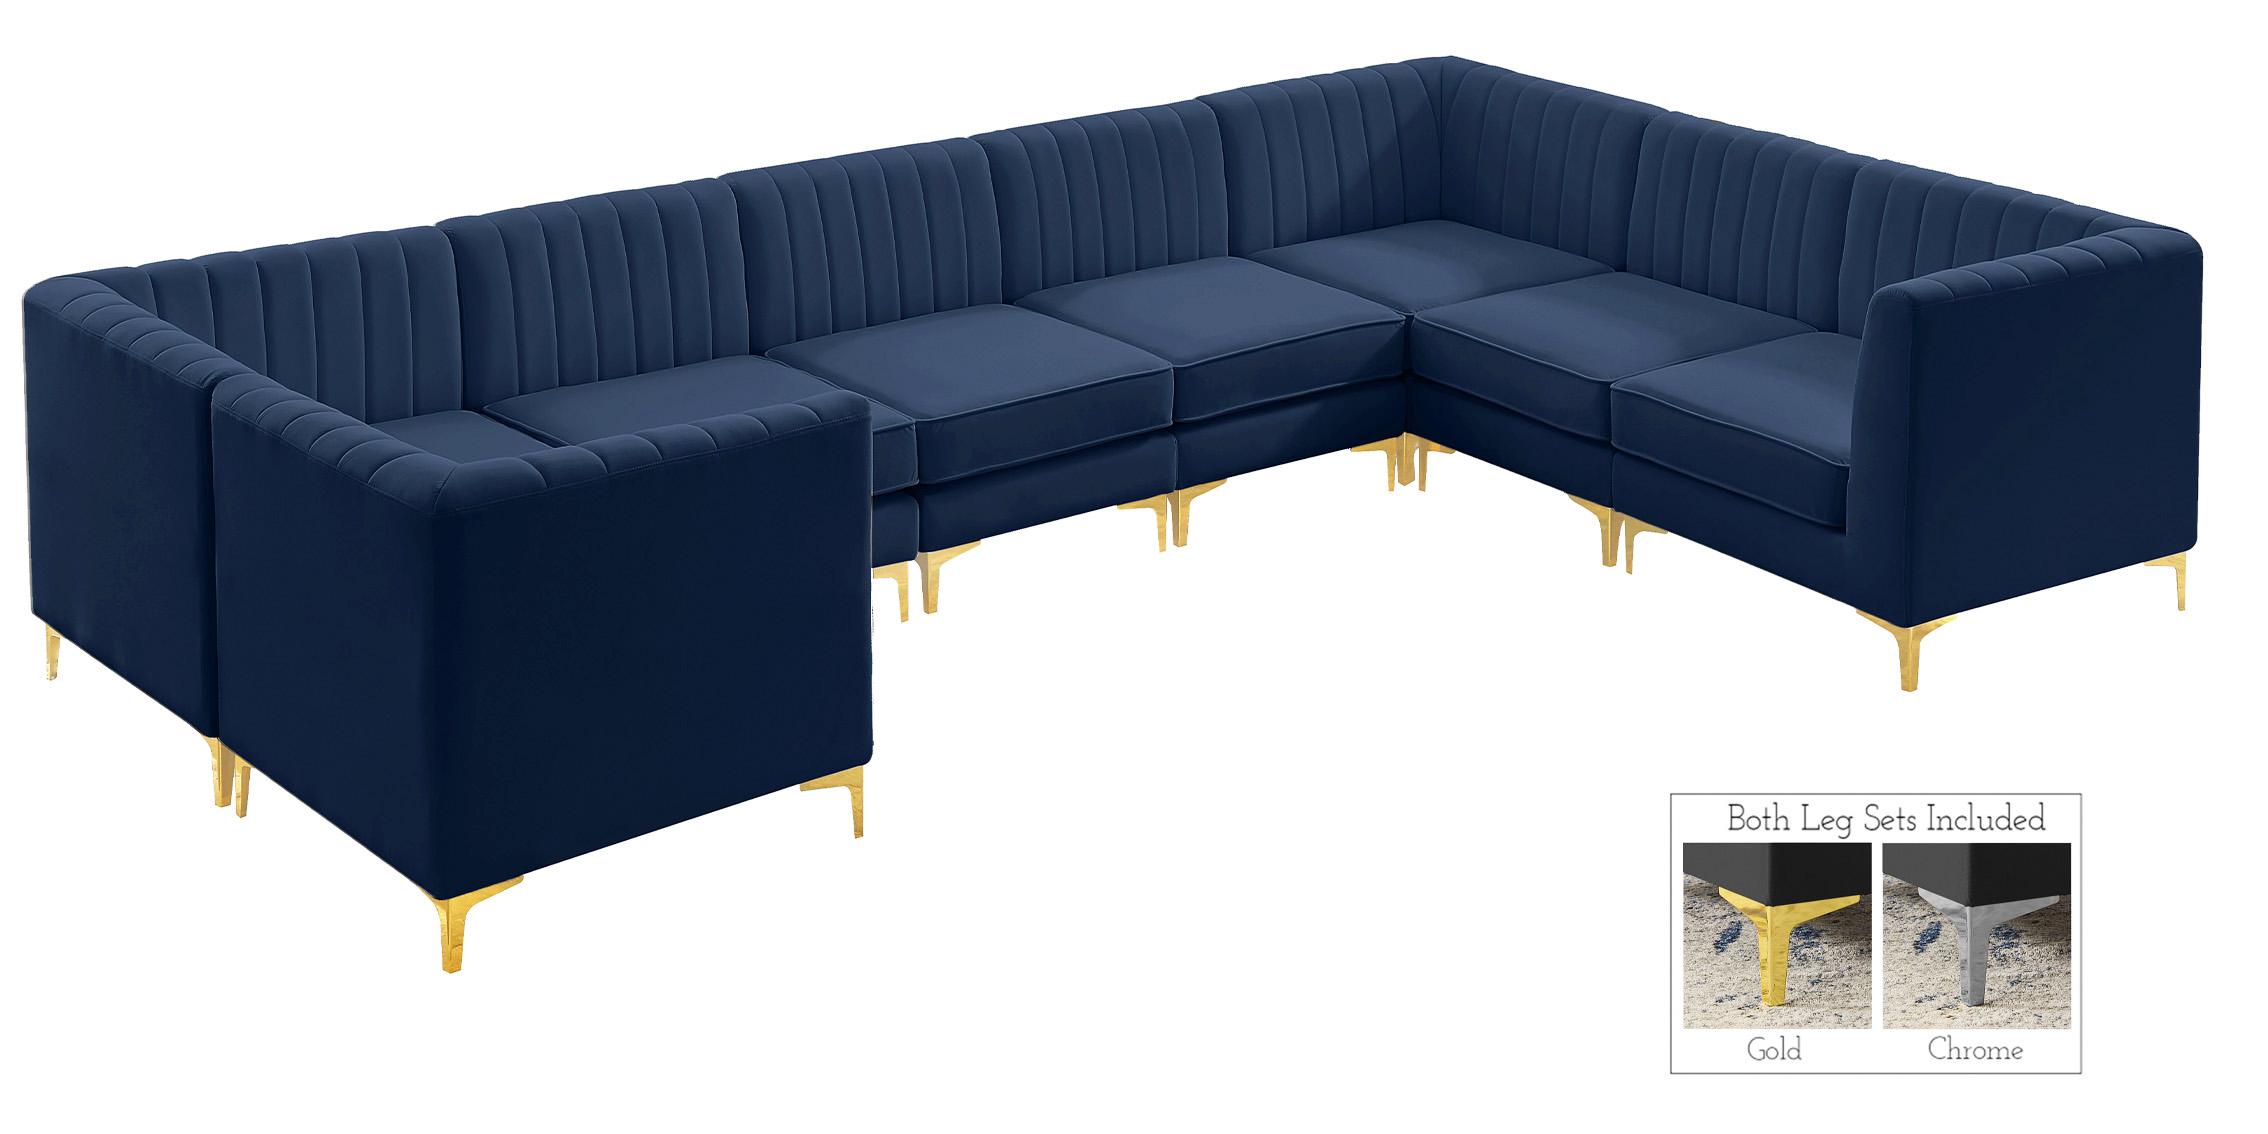 

    
Meridian Furniture ALINA 604Navy-Sec8C Modular Sectional Sofa Navy 604Navy-Sec8C
